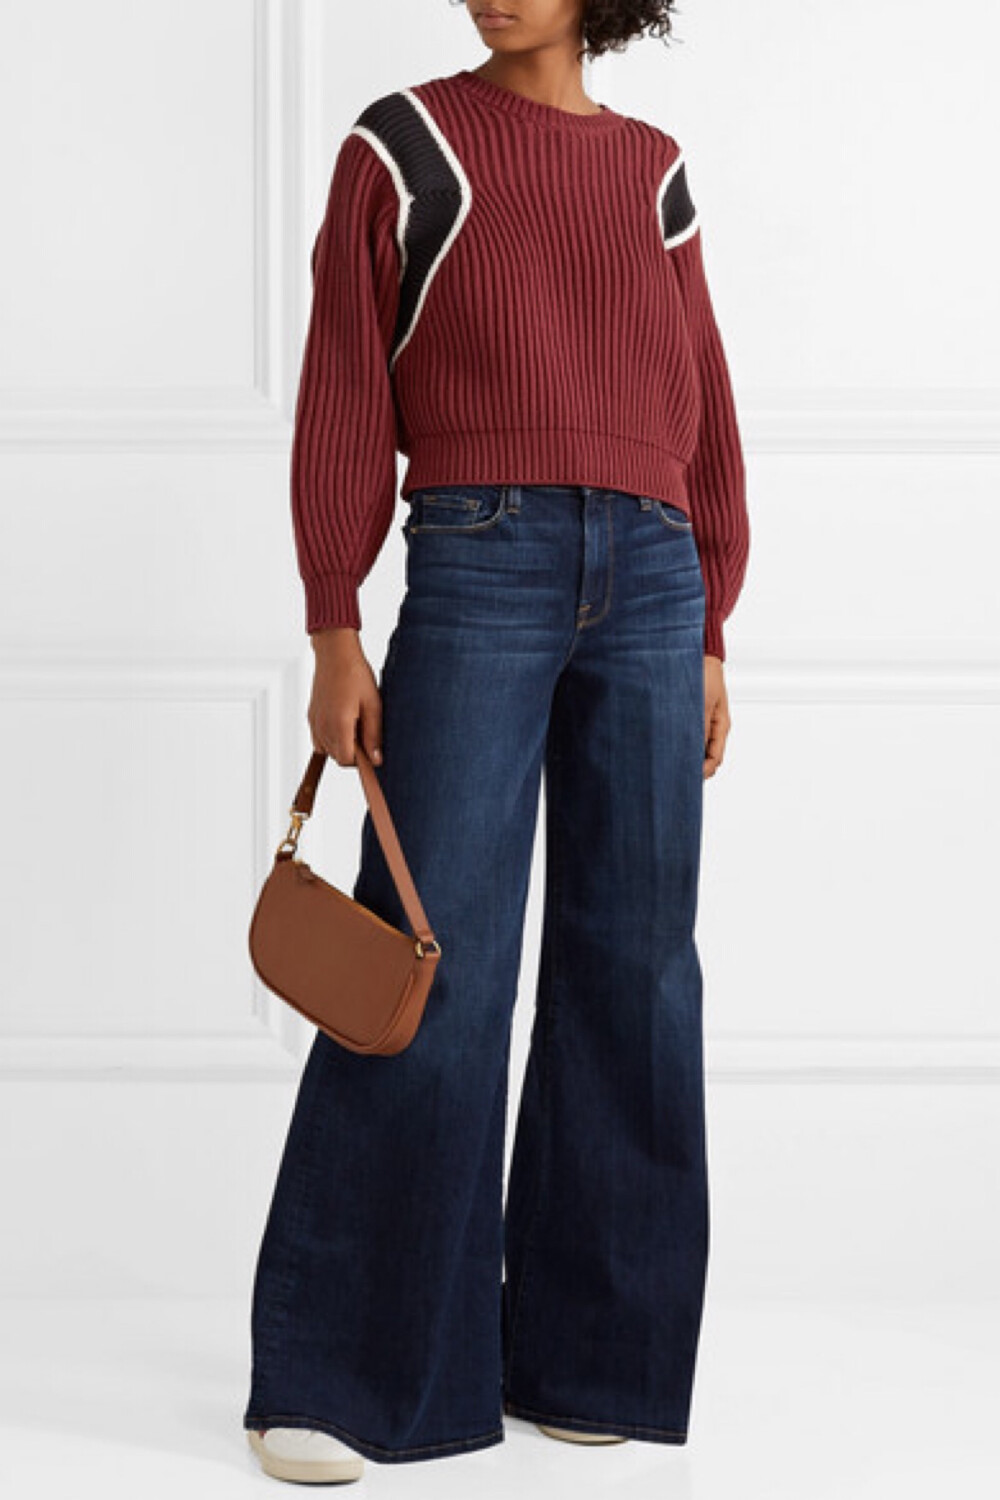 FRAME 这件短款拼色毛衣承袭了 70 年代学院针织衫的经典风格。单品以柔软的棉质混纺毛线织就，设有灯笼袖。不妨挽起袖子，令它的双袖更加丰盈，并配以阔腿牛仔裤，玩转复古造型。